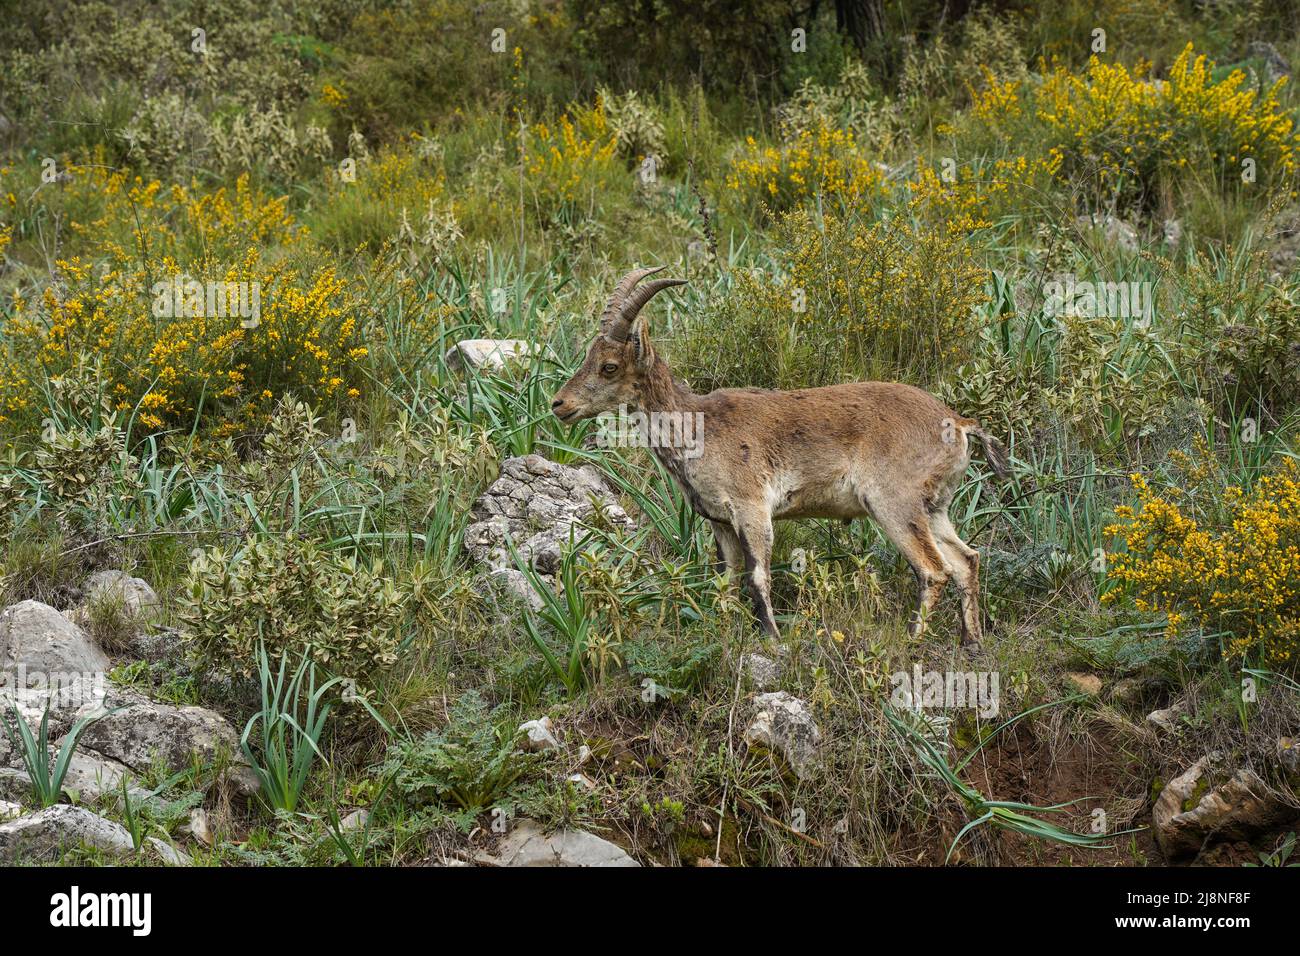 Ibex, cabra salvaje española o cabra salvaje ibérica (Capra pyrenaica), Andalucía, España. Foto de stock